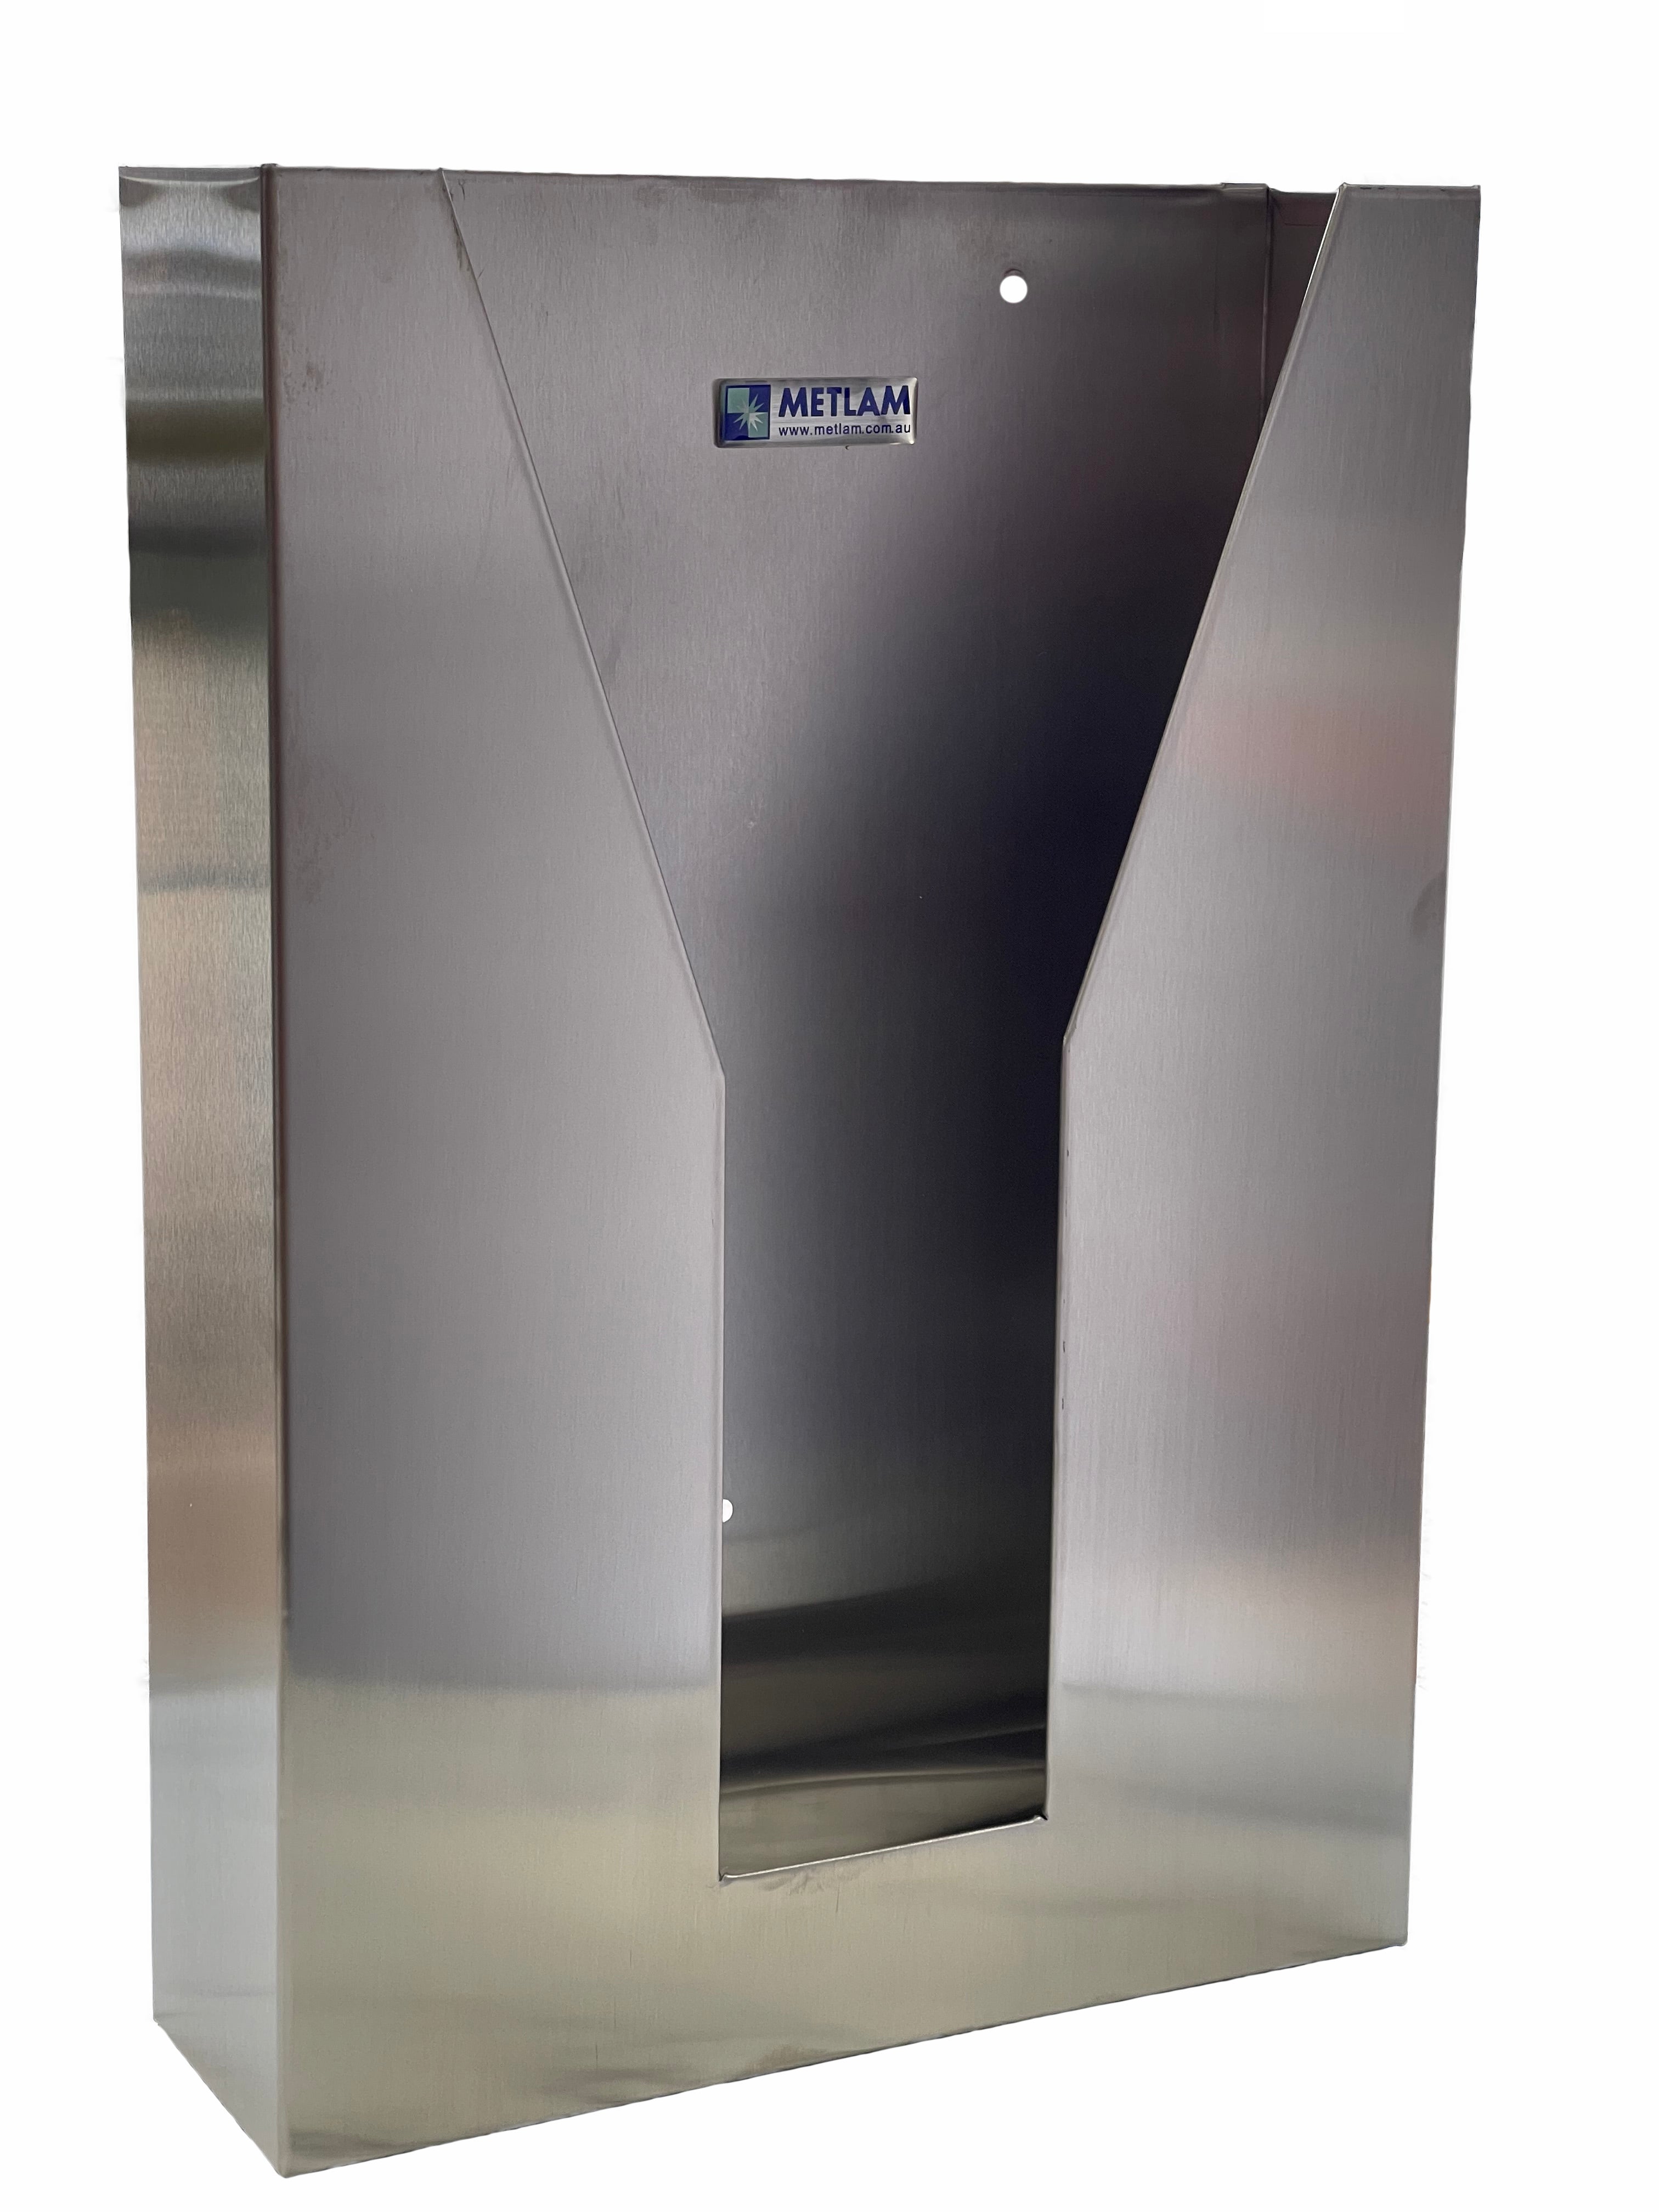 Behind the mirror/door Paper Towel Dispenser in Satin Stainless Steel